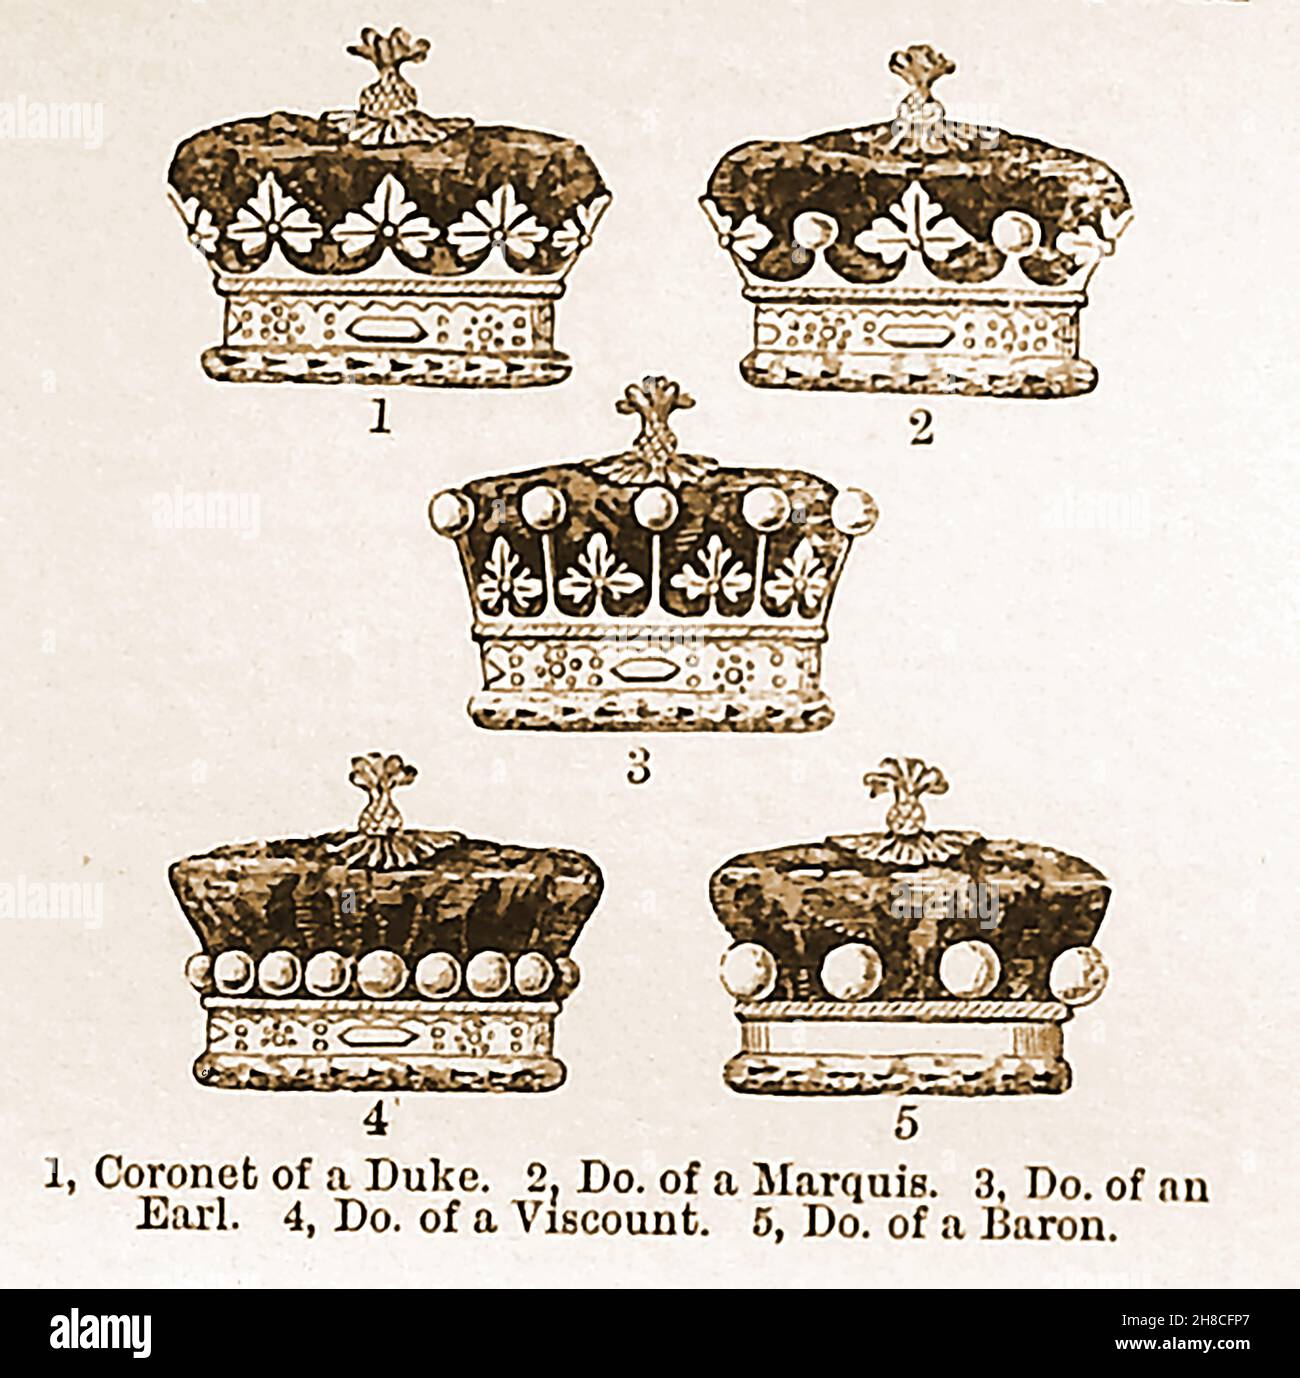 Ilustraciones del siglo 19th que muestran varias coronas / coronetas del Imperio Británico. Duke, Marquis, Earl, Viscount y Barón. Foto de stock